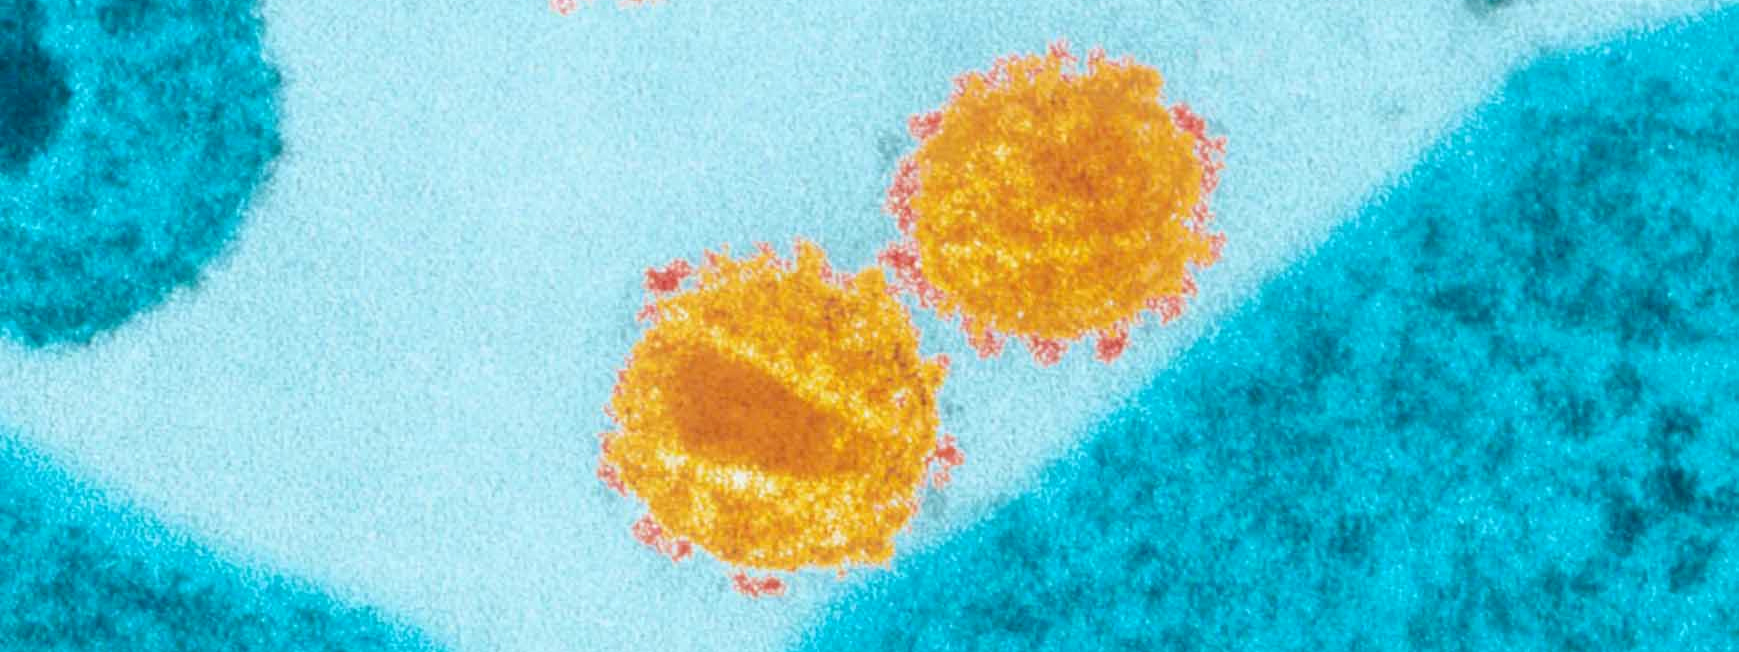 VIH : Identification de récepteurs clés de la réponse immunitaire chez les patients contrôlant spontanément l’infection